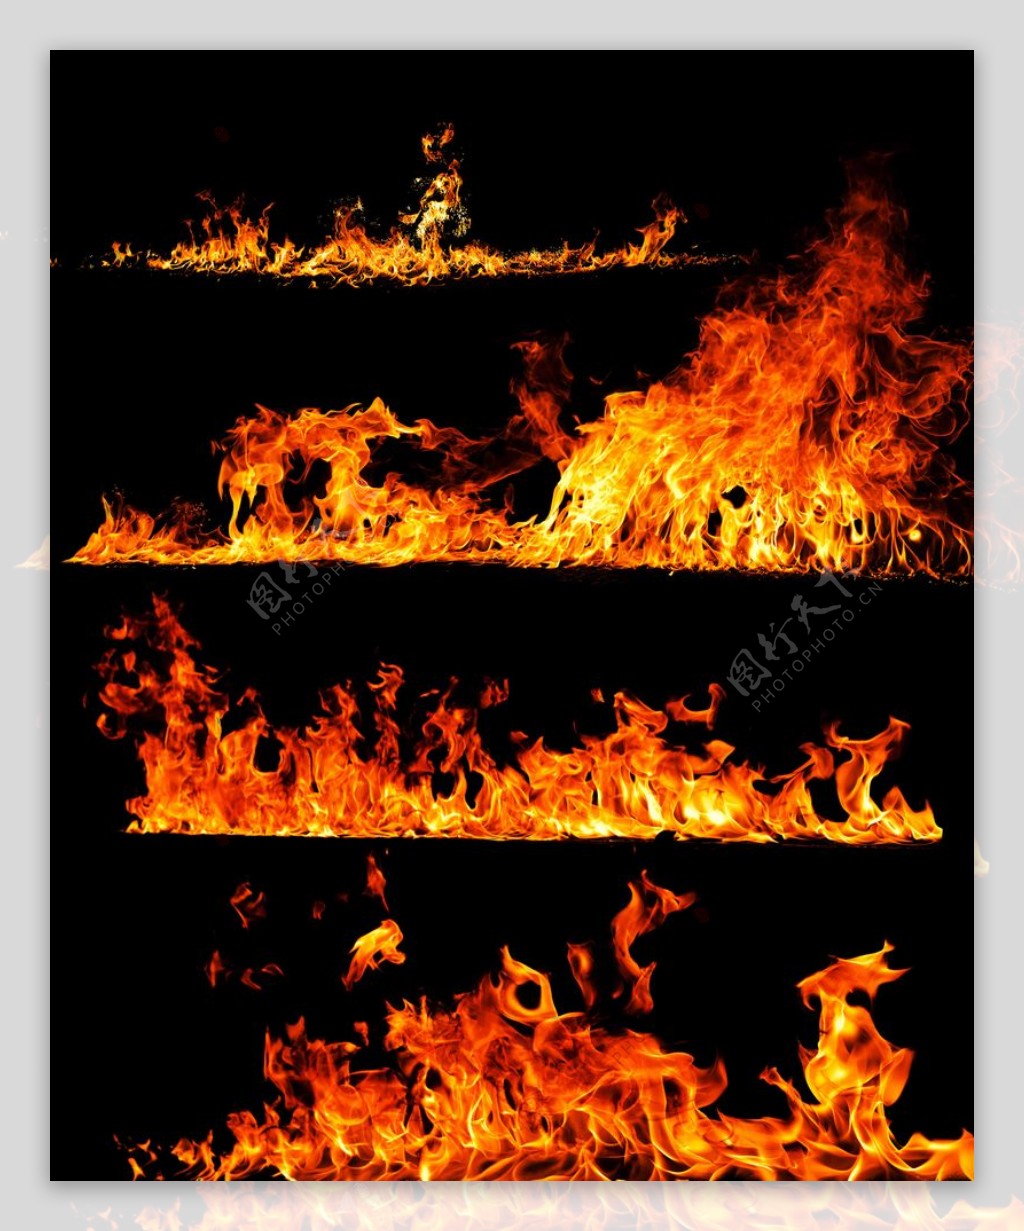 火焰素材图片